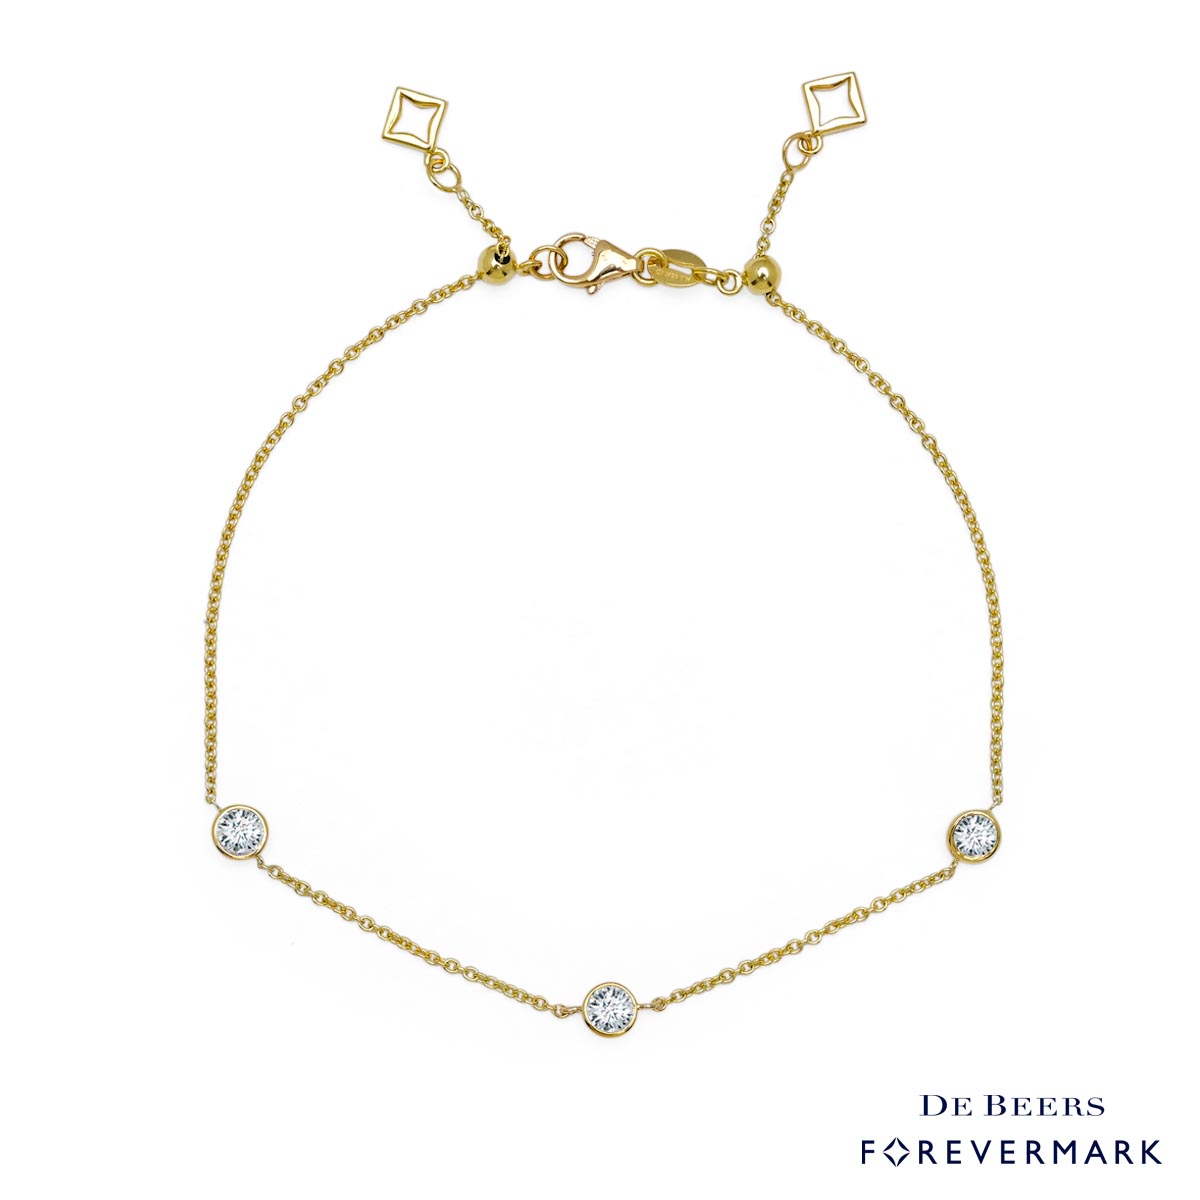 De Beers Forevermark Diamond Bracelet in 18kt Yellow Gold (1/2ct tw)